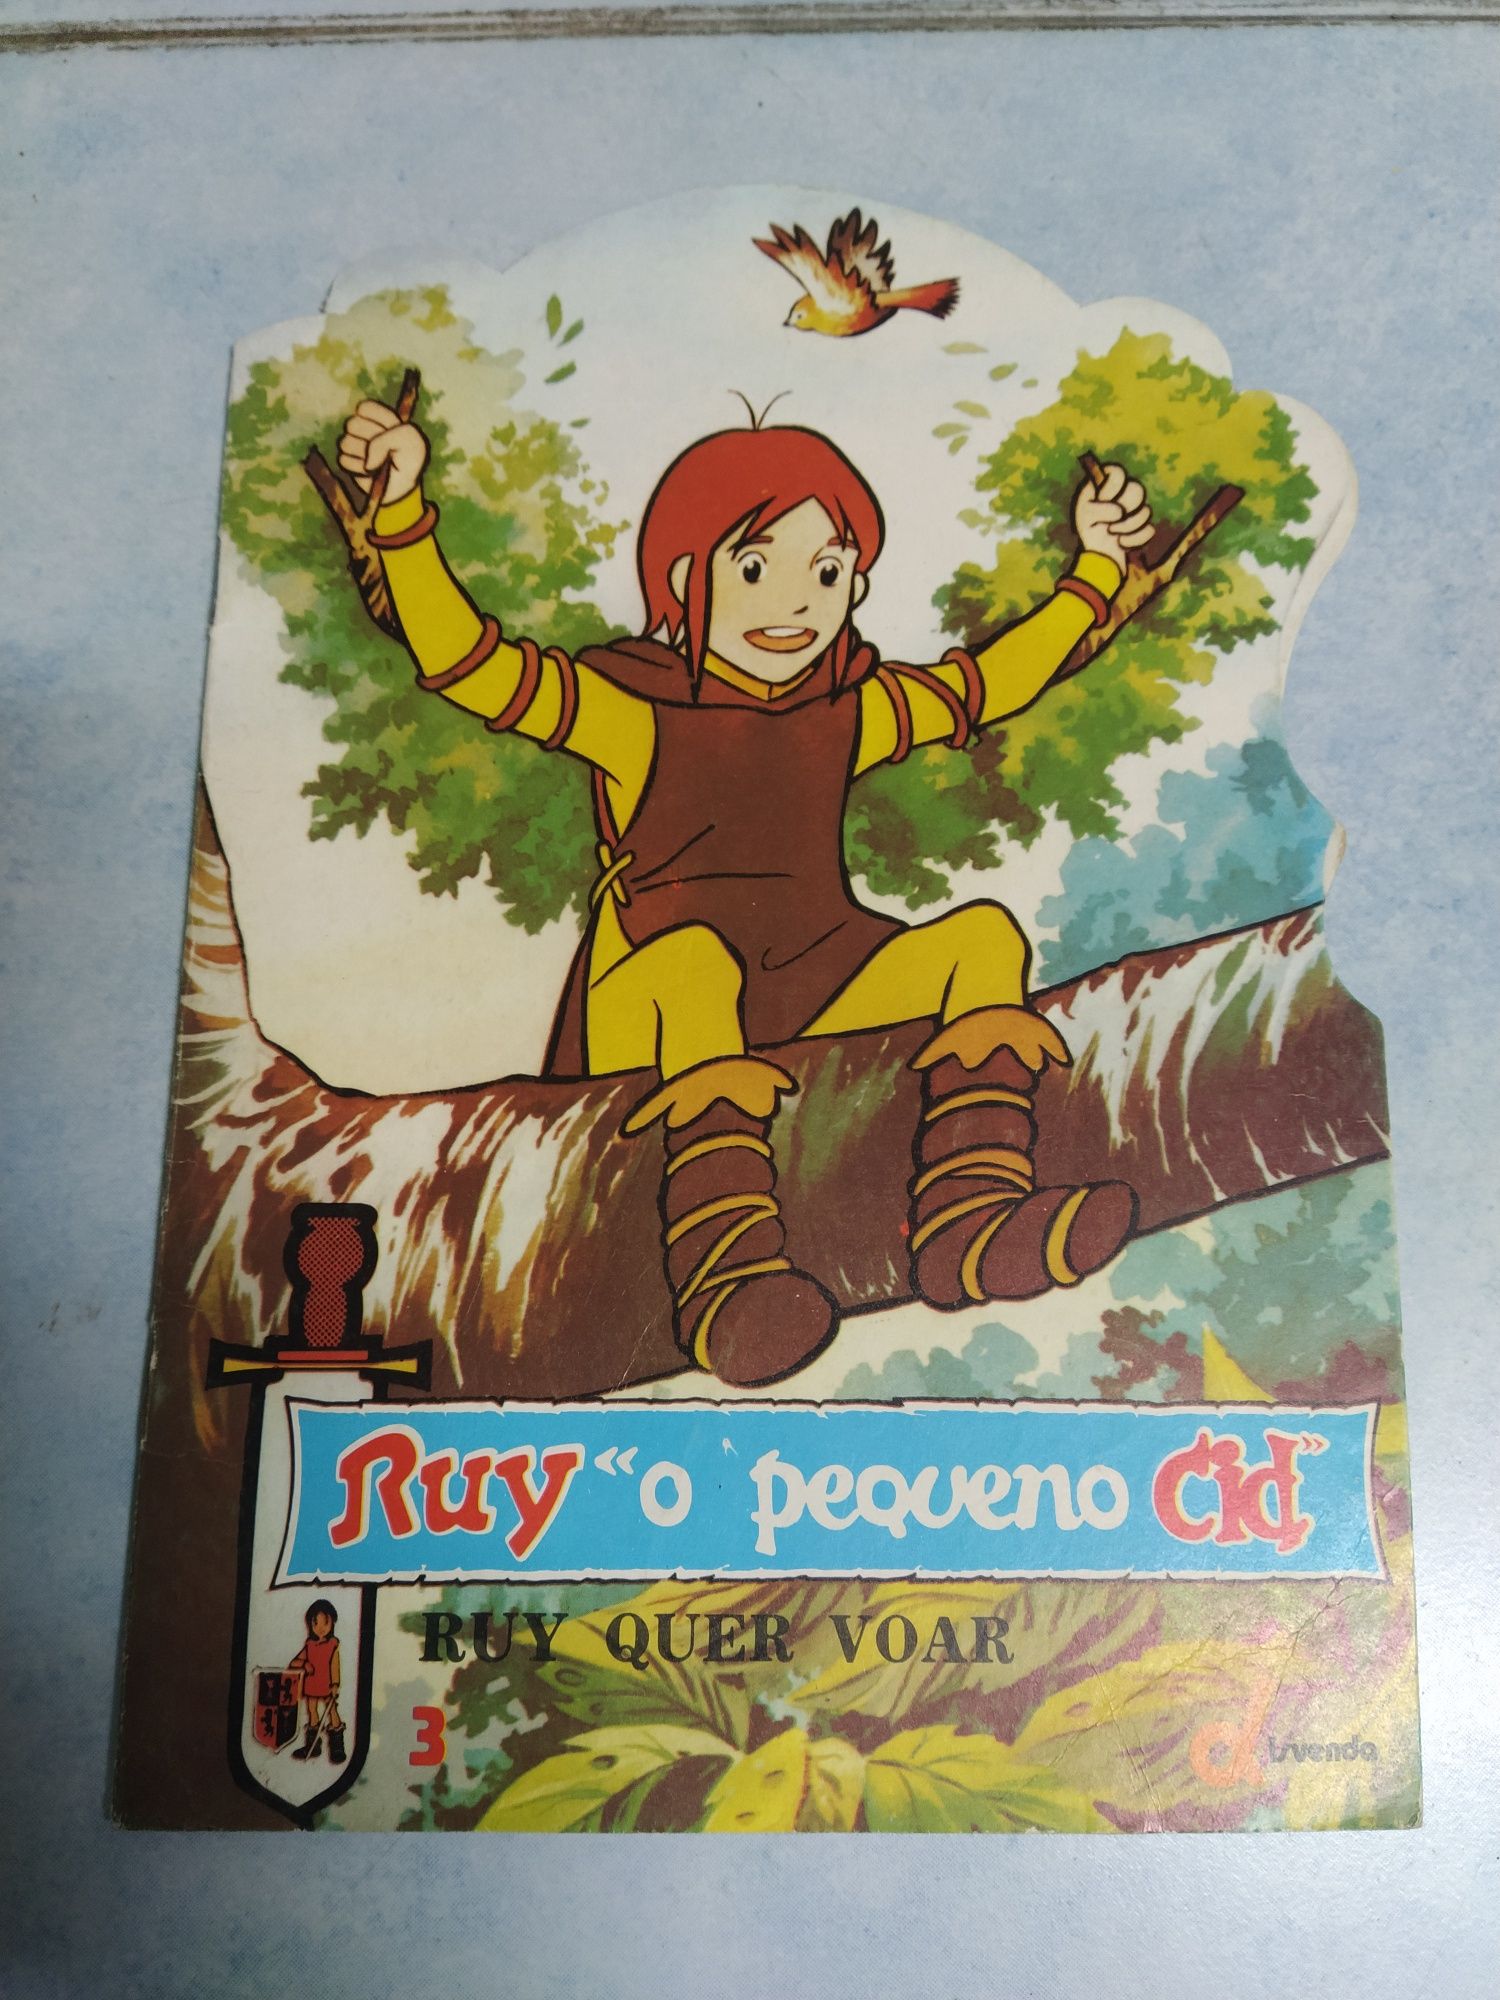 6 Livros do "Ruy, o pequeno Cid"